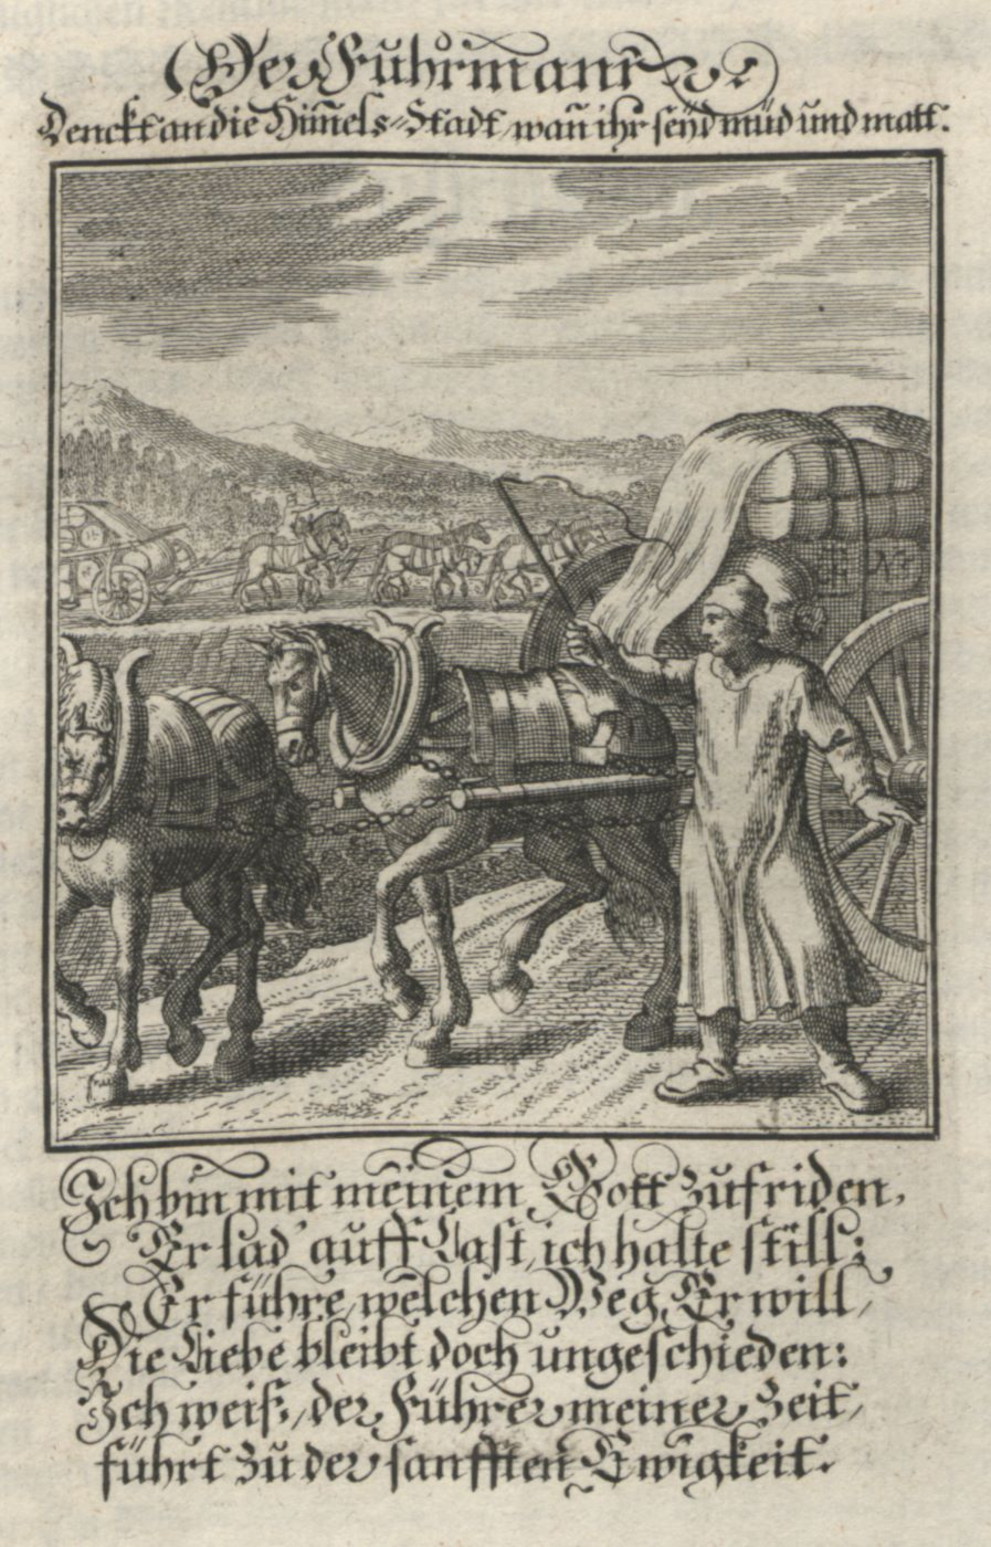 Ein Mann treibt ein Pferdefuhrwerk mit einer Peitsche an, im Hintergrund sind weitere Fuhrwerke zu sehen. Dazu ein Text in altertümlichen Buchstaben.